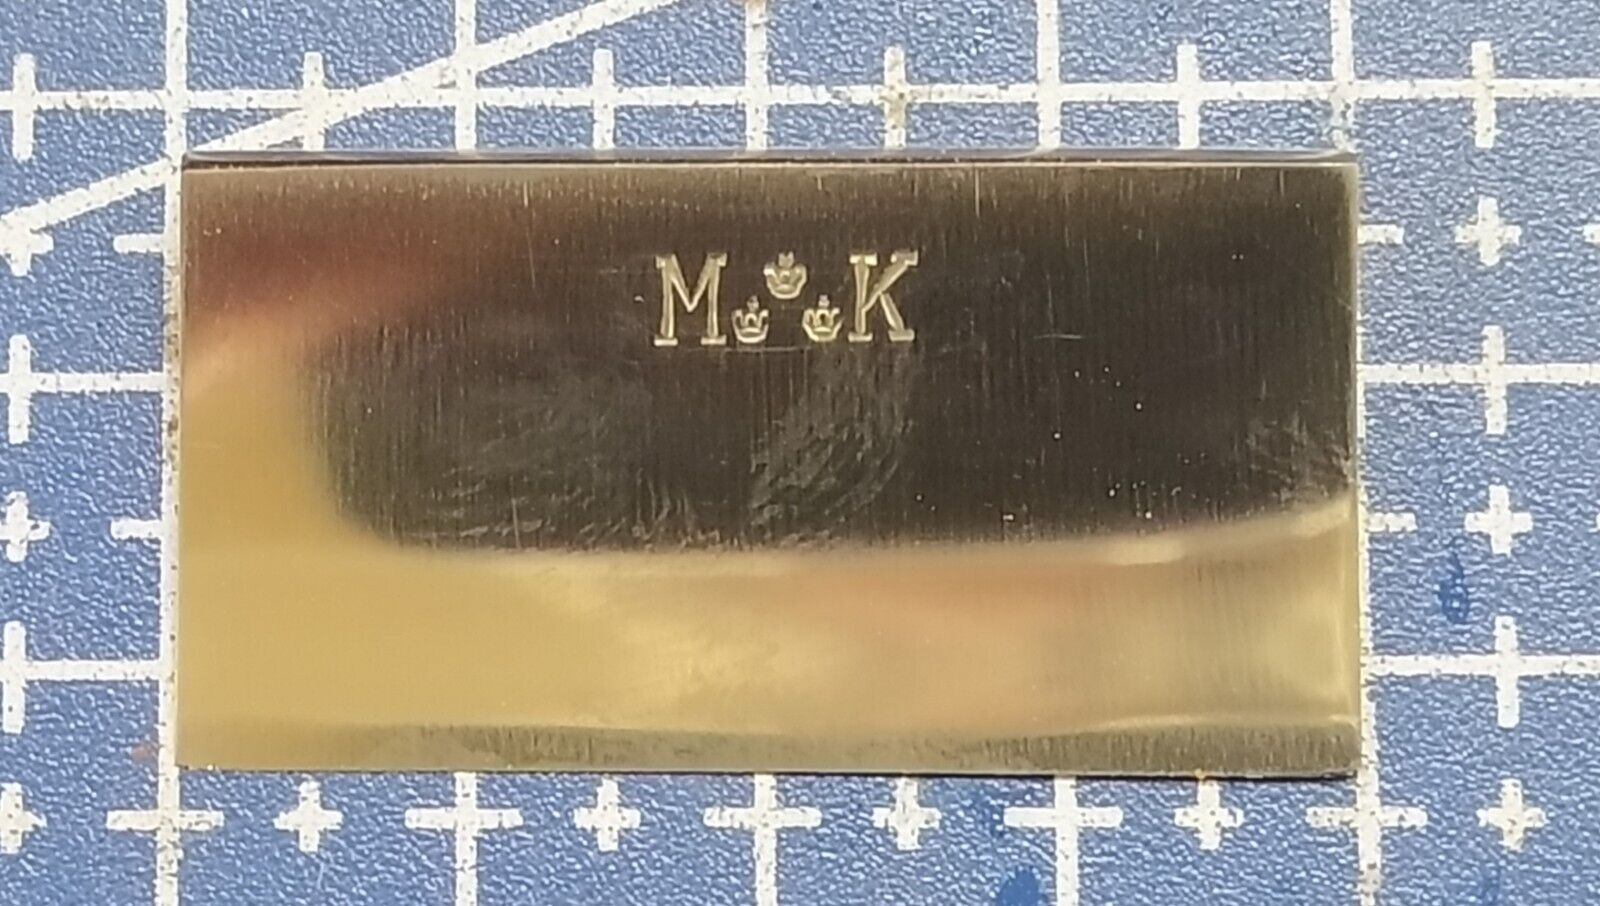 1pcs. C.V.Heljestrand MK MKindal safety razors blade models SE razor.